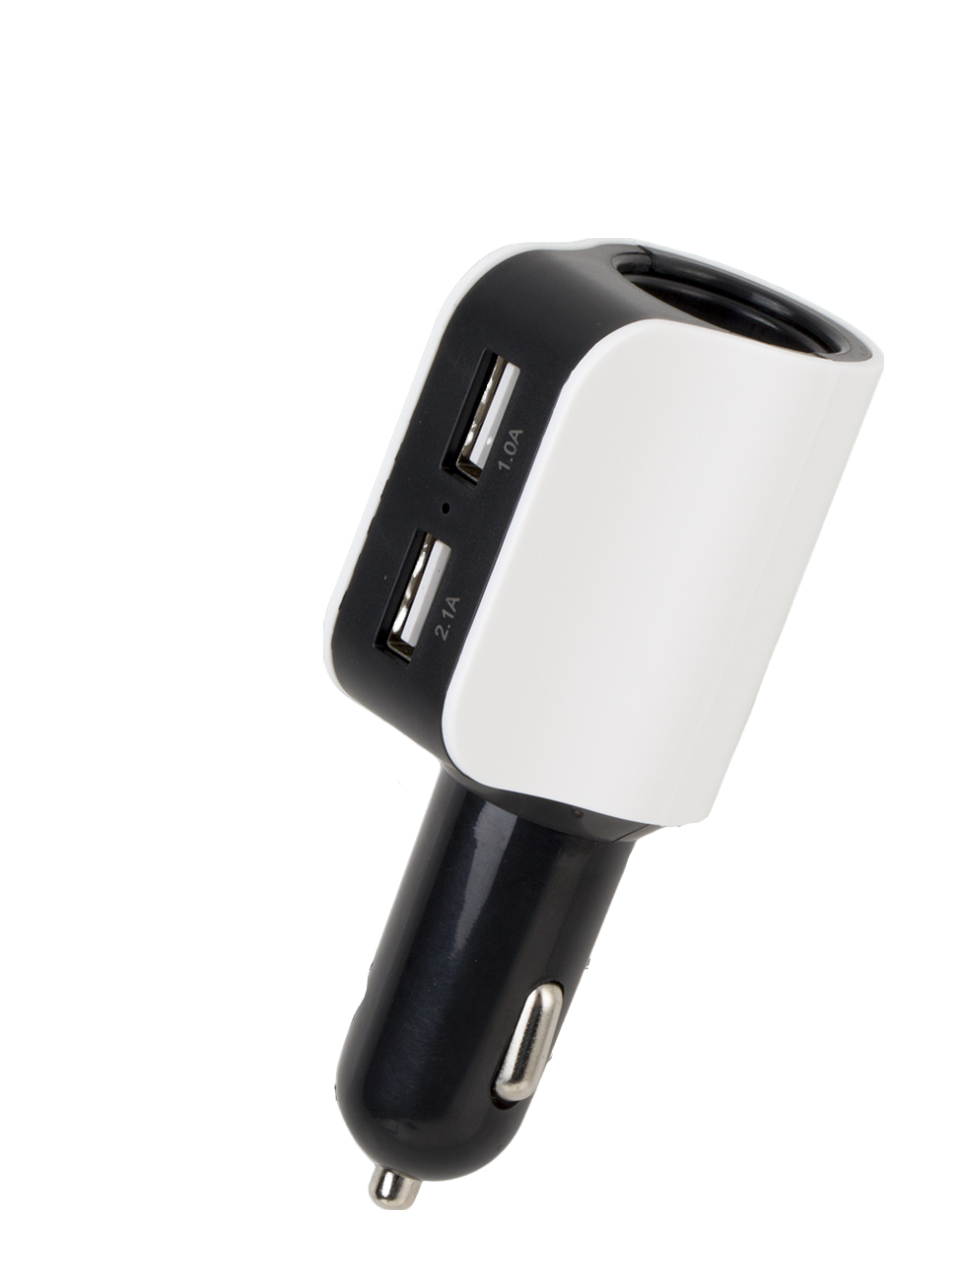 2.1A Dual USB 5V Car Cigarette Lighter Socket Splitter Power Charger Black